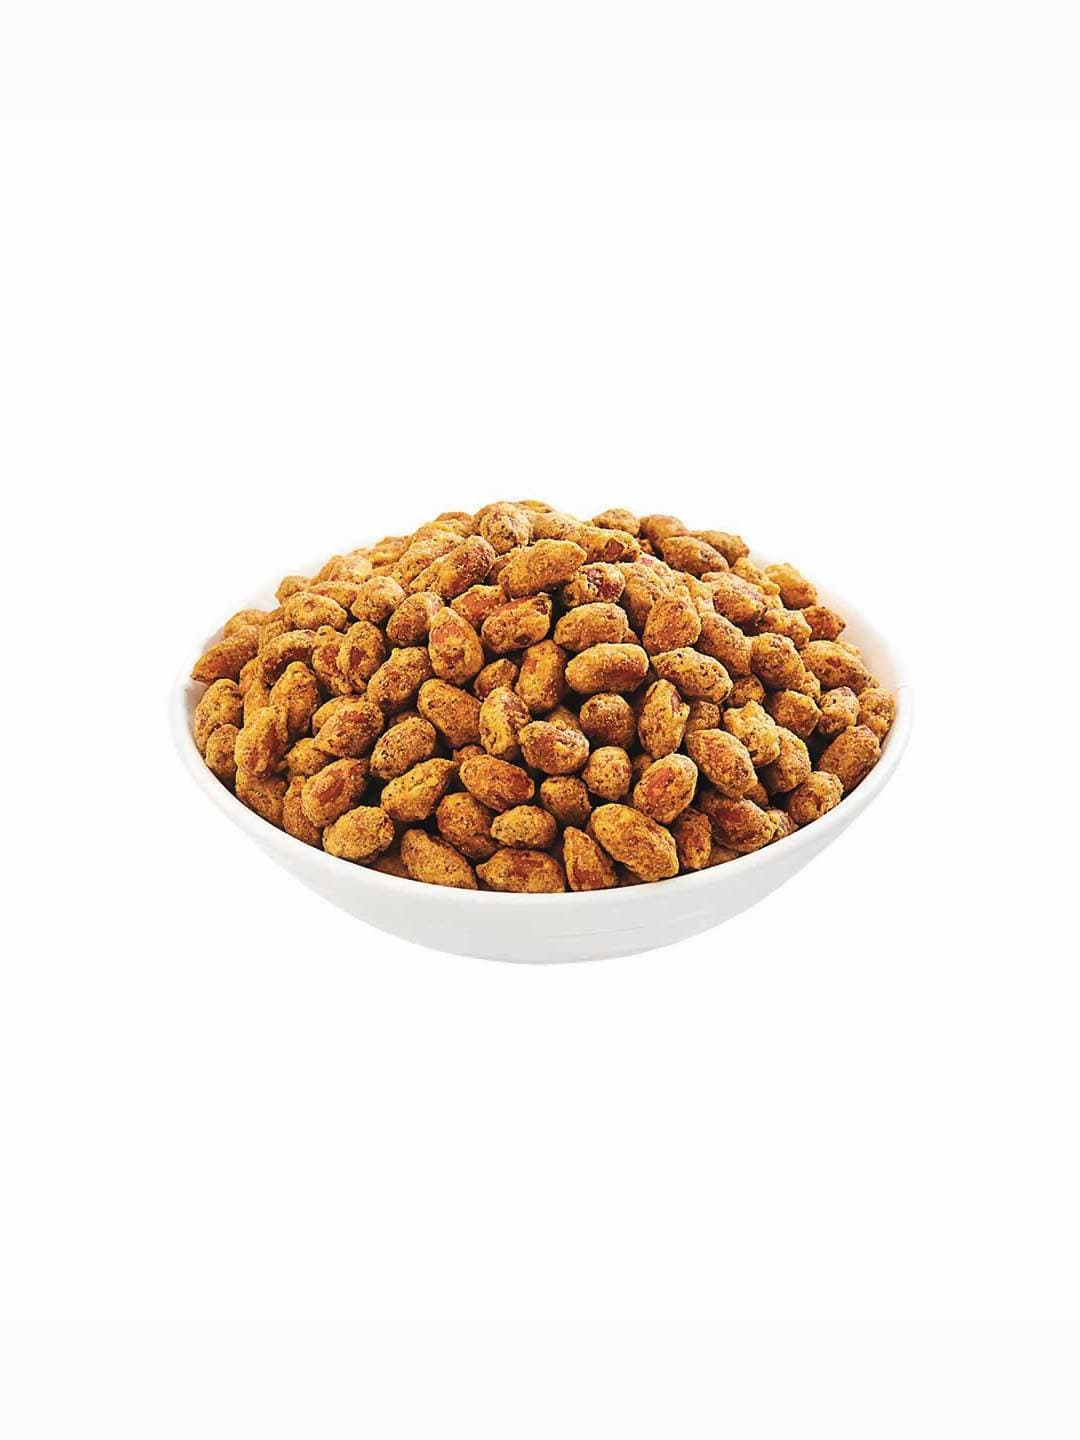 Bikano Tasty Spicy Coated Peanuts